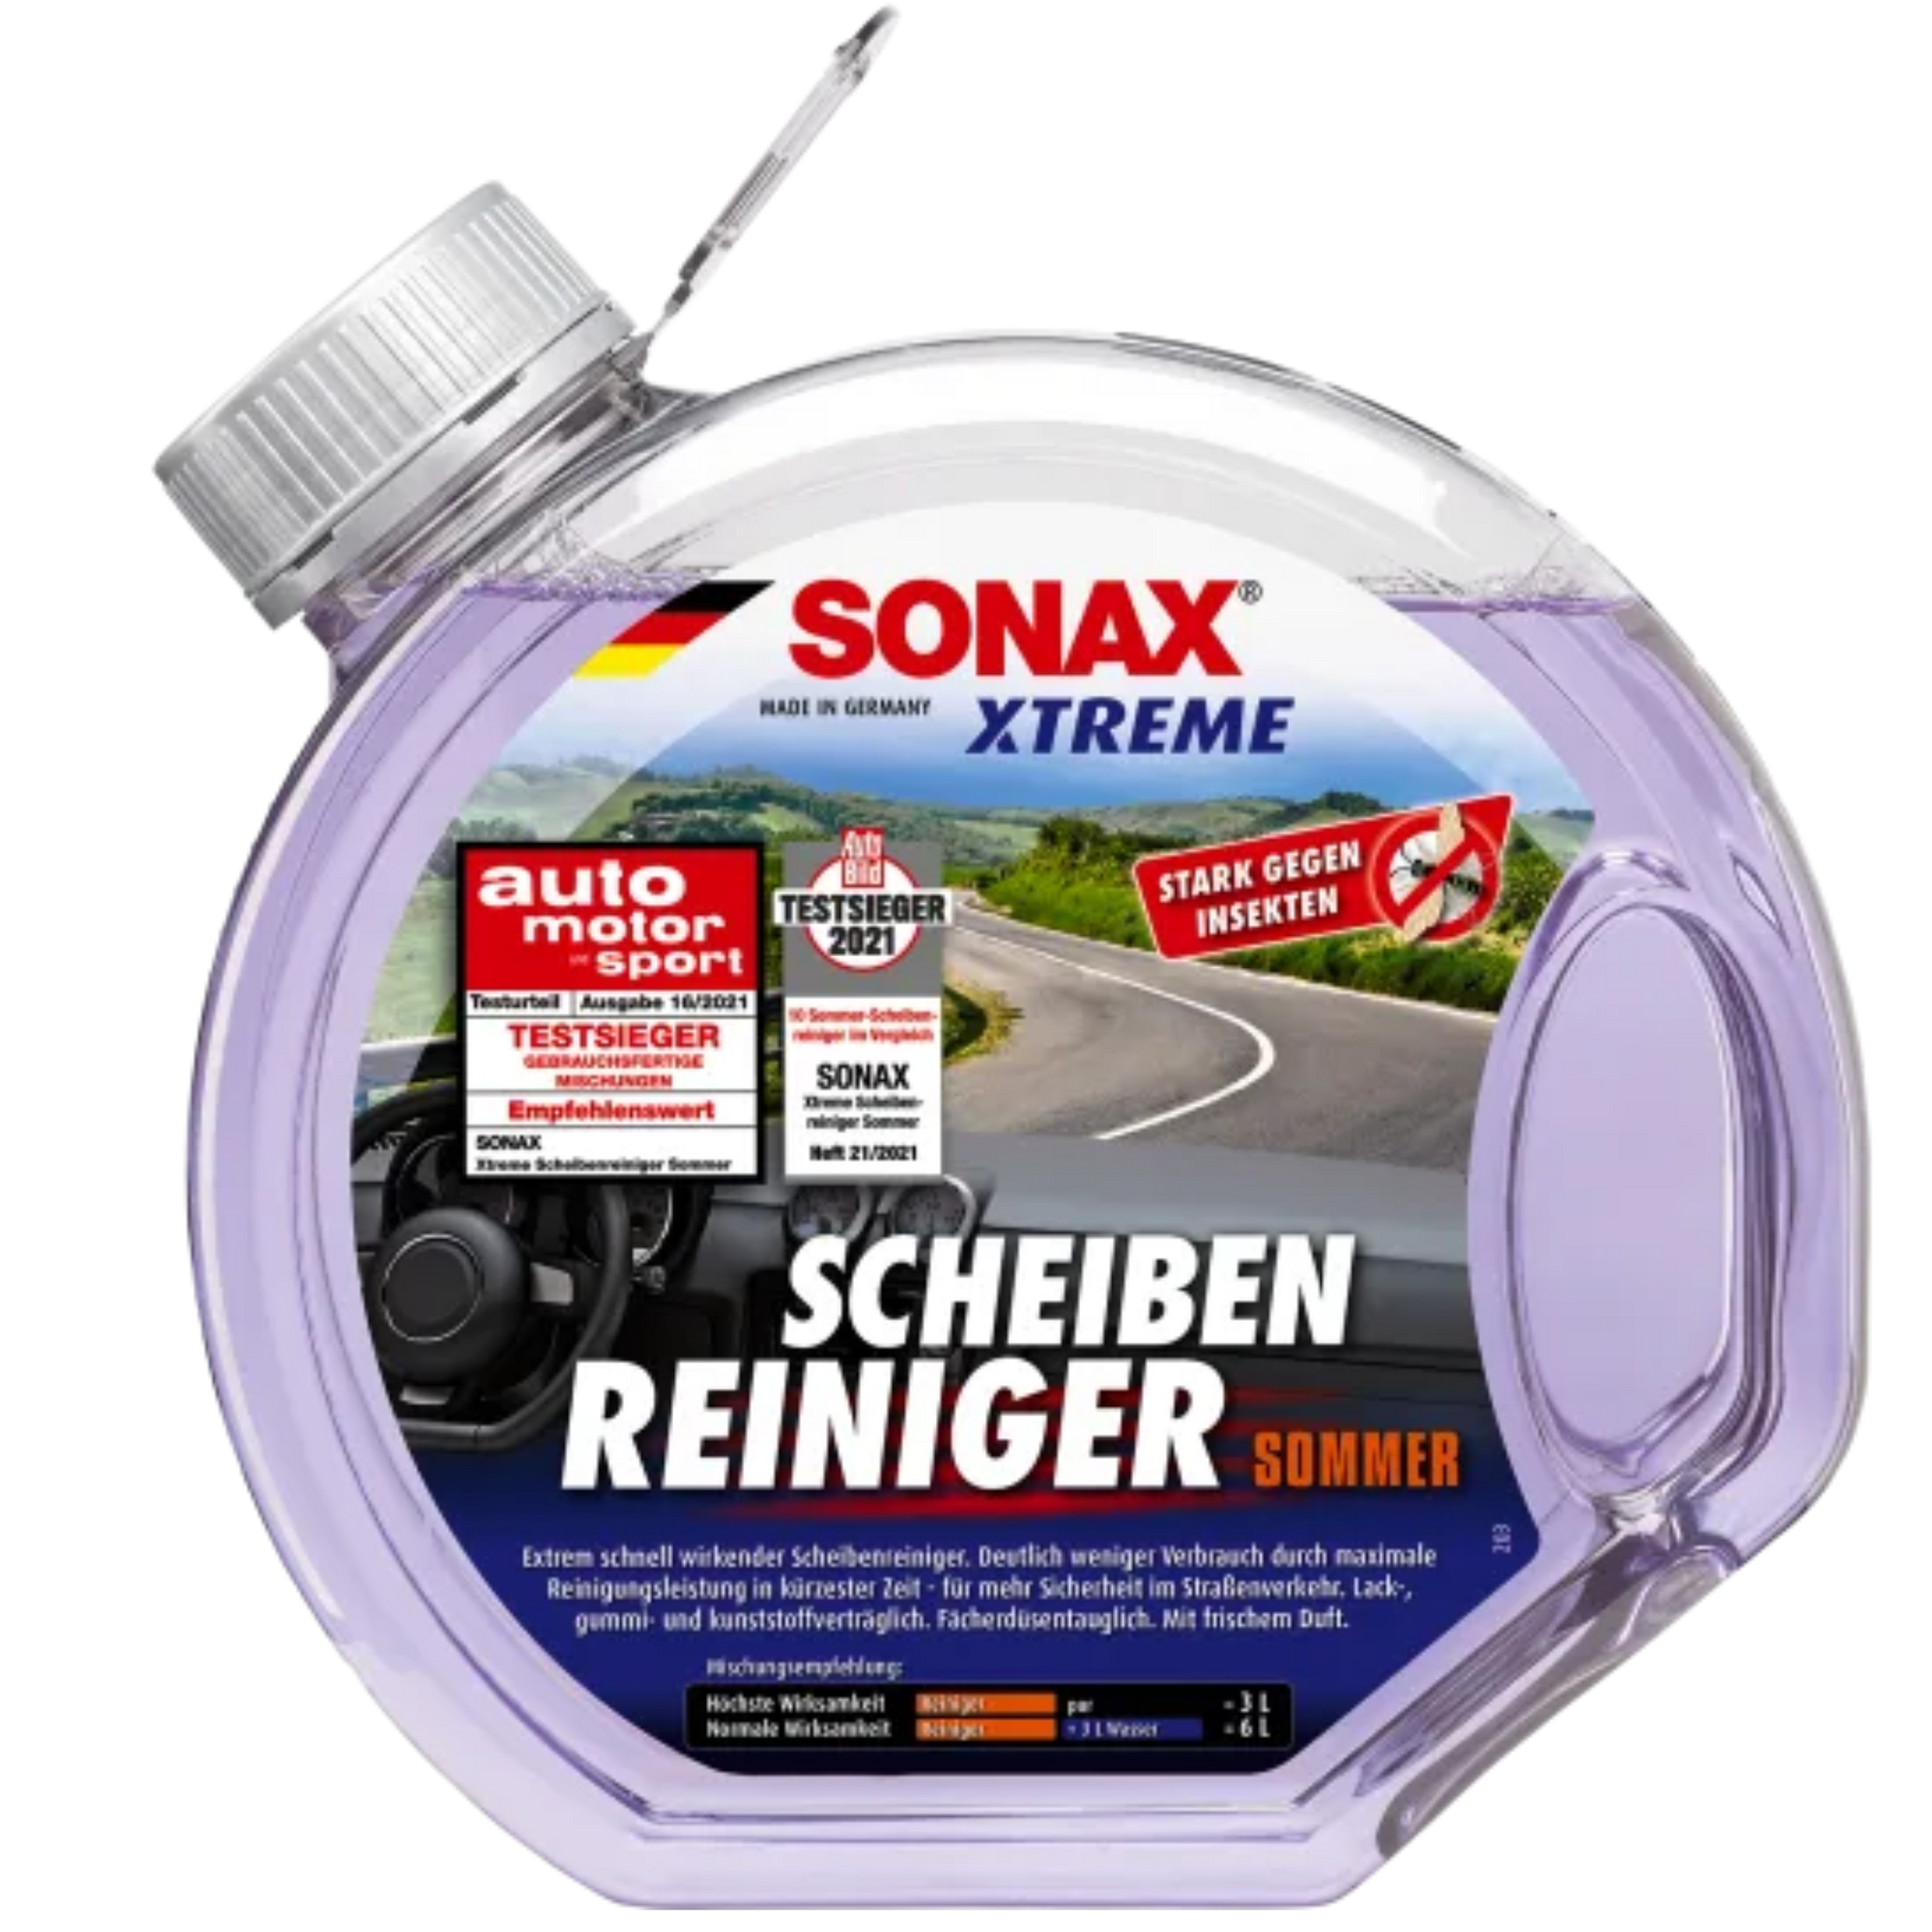 SONAX XTREME Scheibenreiniger Sommer gebrauchsfertig, 3l – Marx Performance